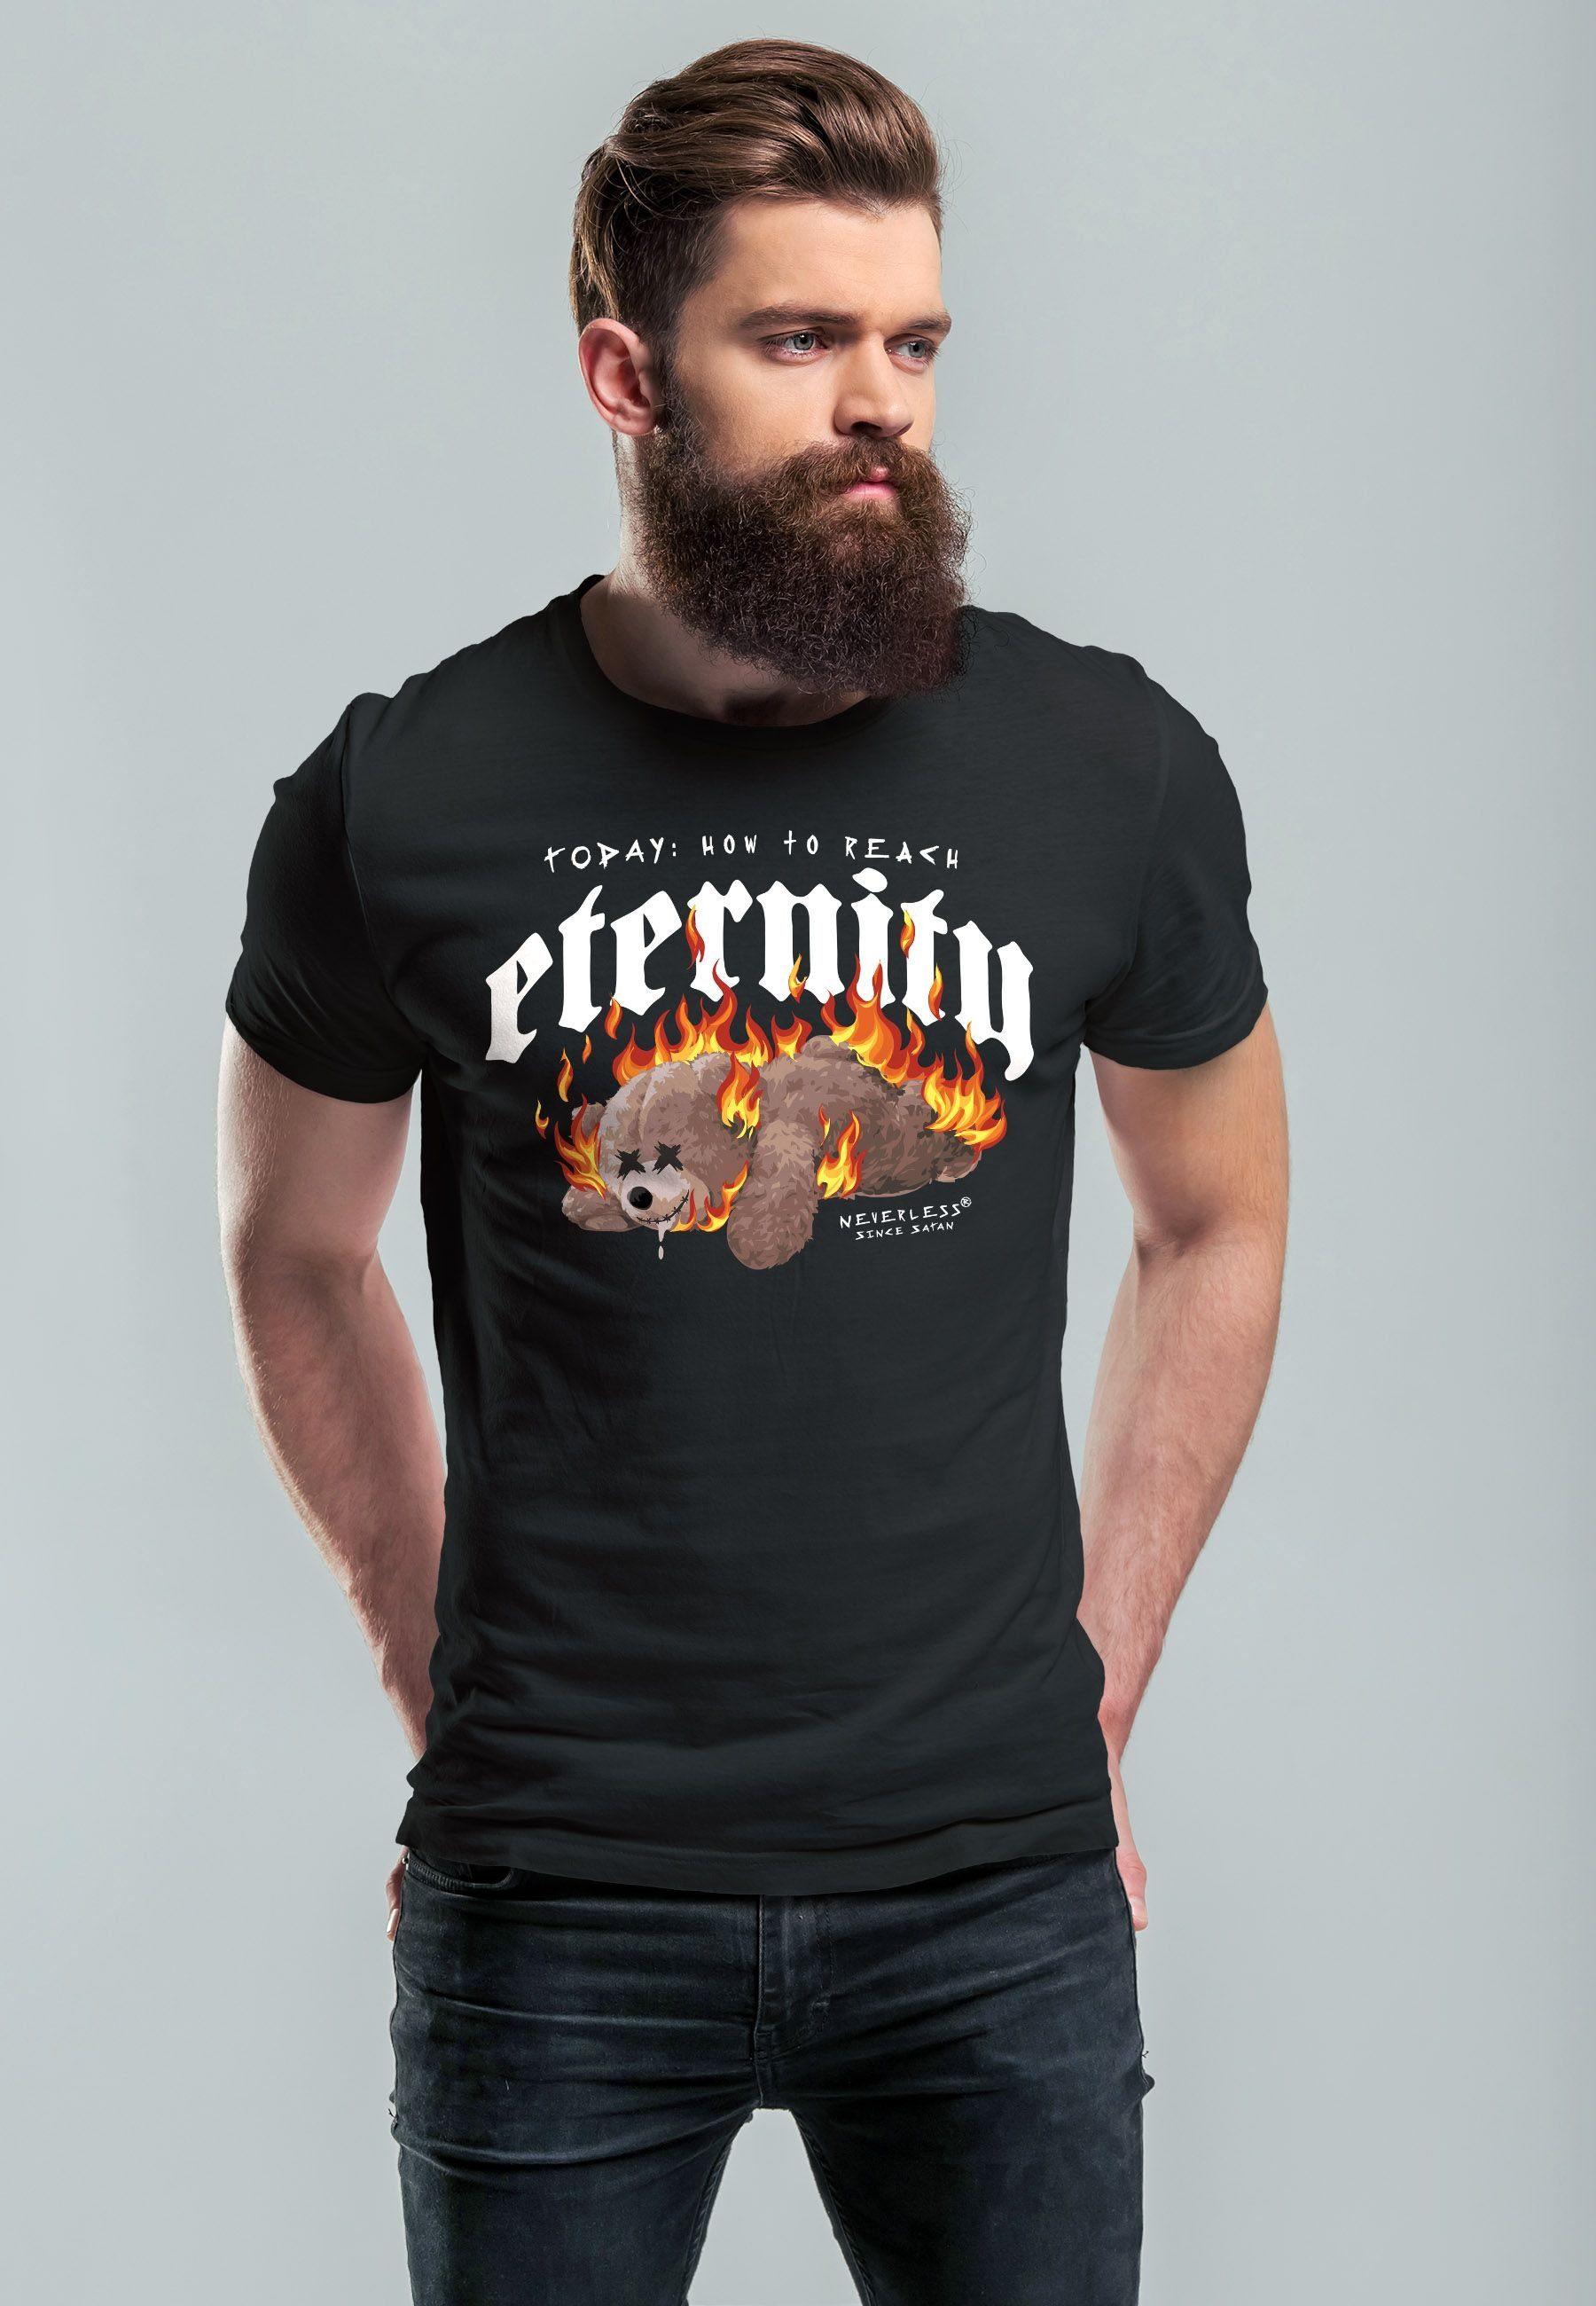 Print Teddy Sarkasmus Bär Print-Shirt schwarz Print Ironie Fash Herren mit Neverless Eternity T-Shirt Aufdruck